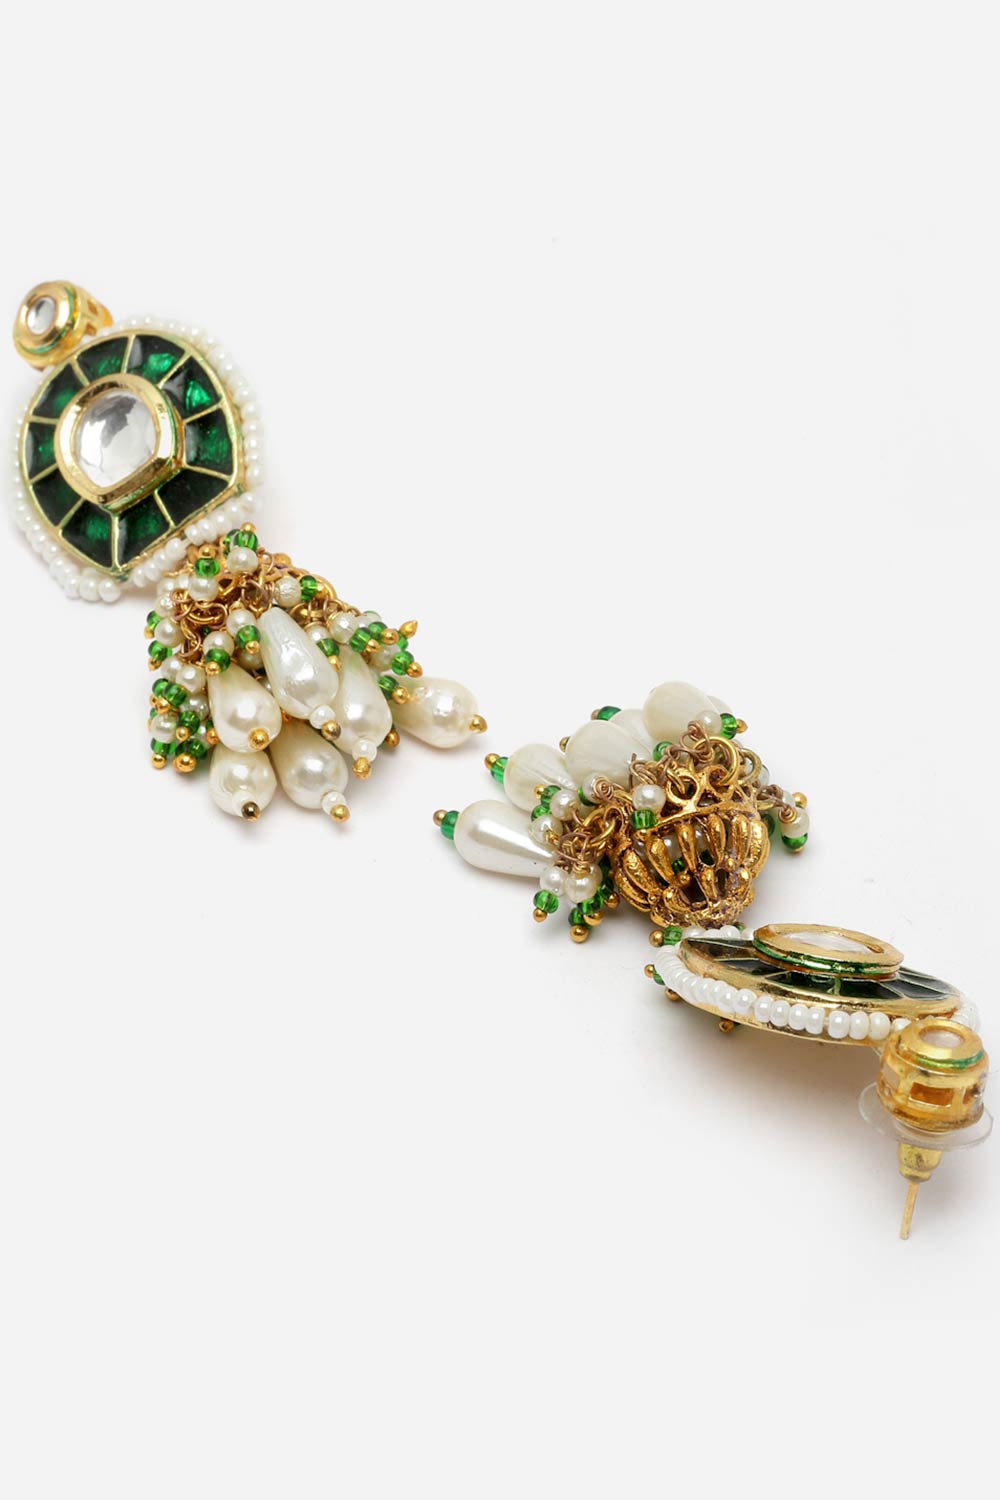 Buy Cerah Dark Green & Gold Kundan with Pearls Jhumka Earrings Online - Back